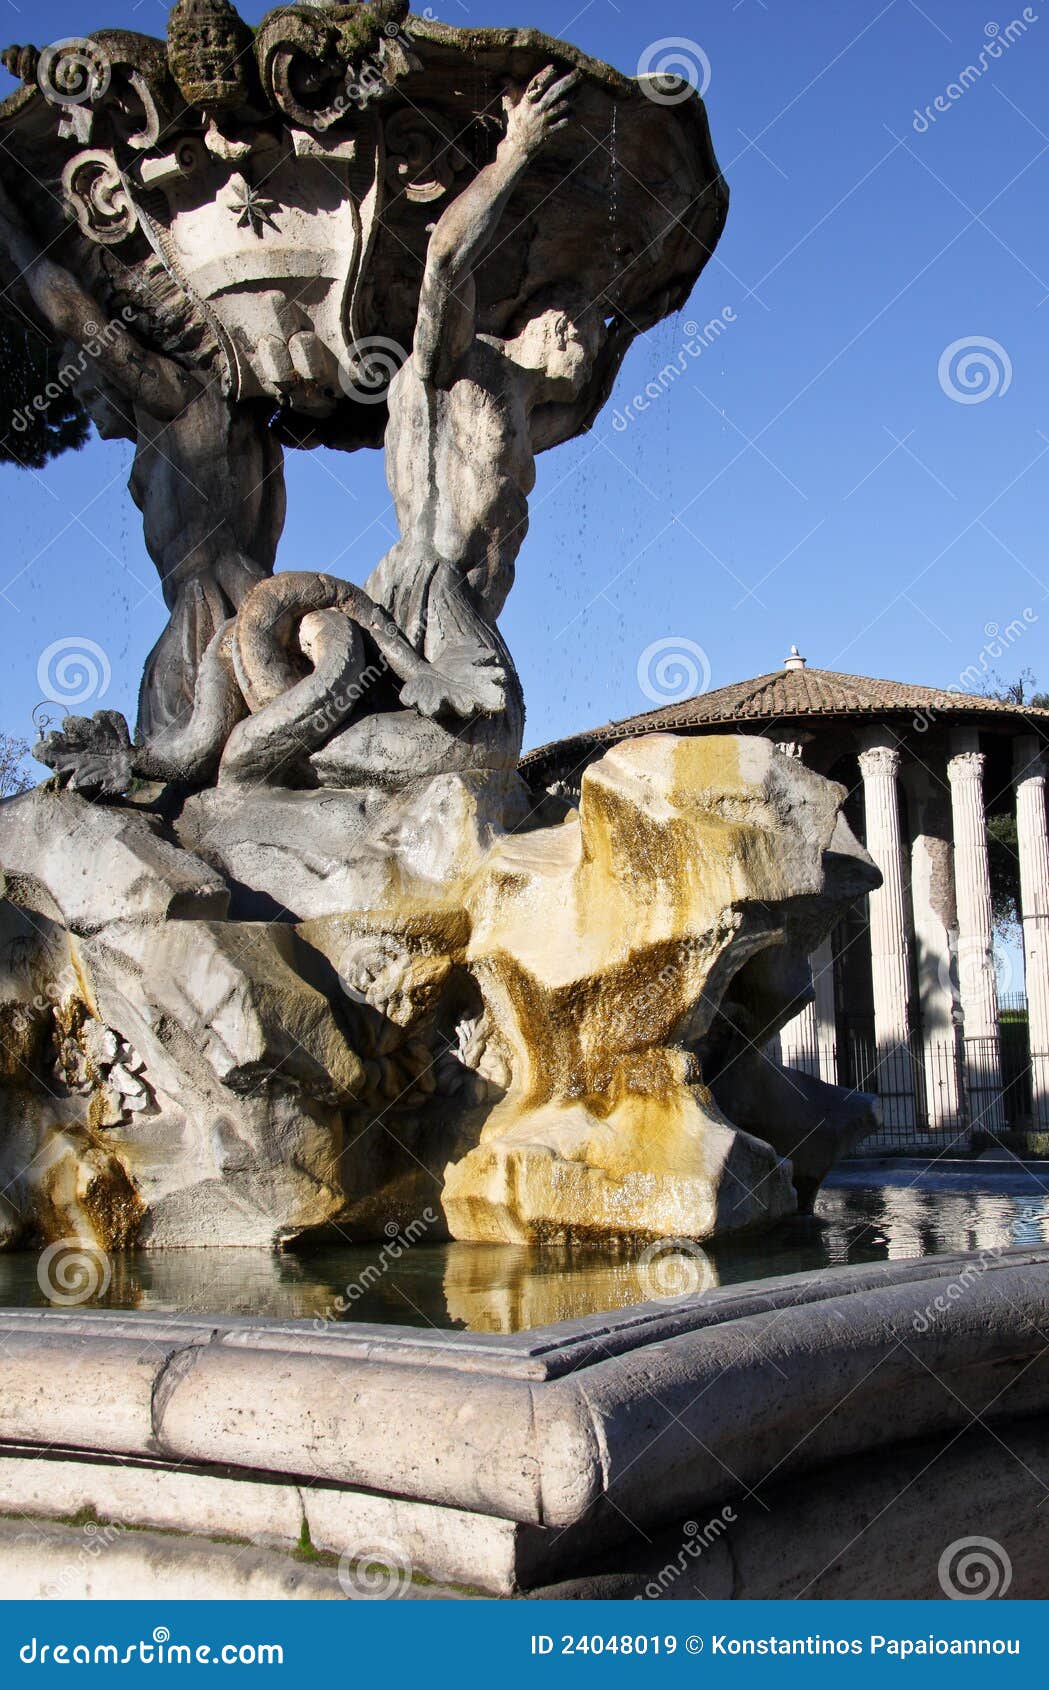 triton fountain in rome